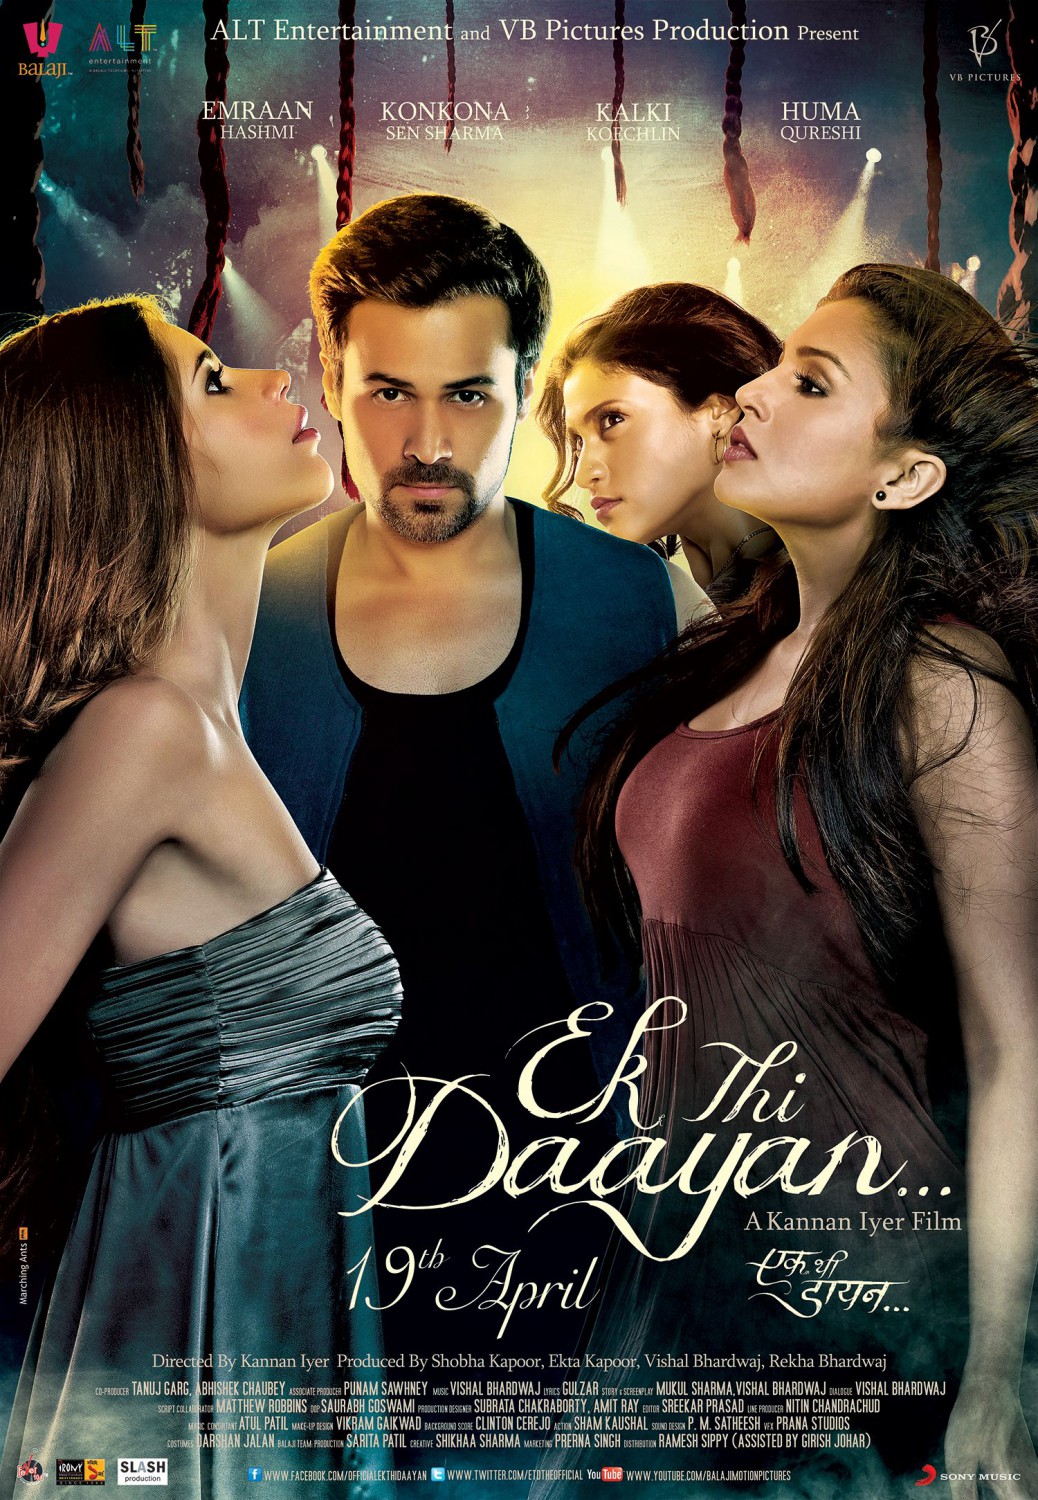 Extra Large Movie Poster Image for Ek Thi Daayan (#4 of 4)